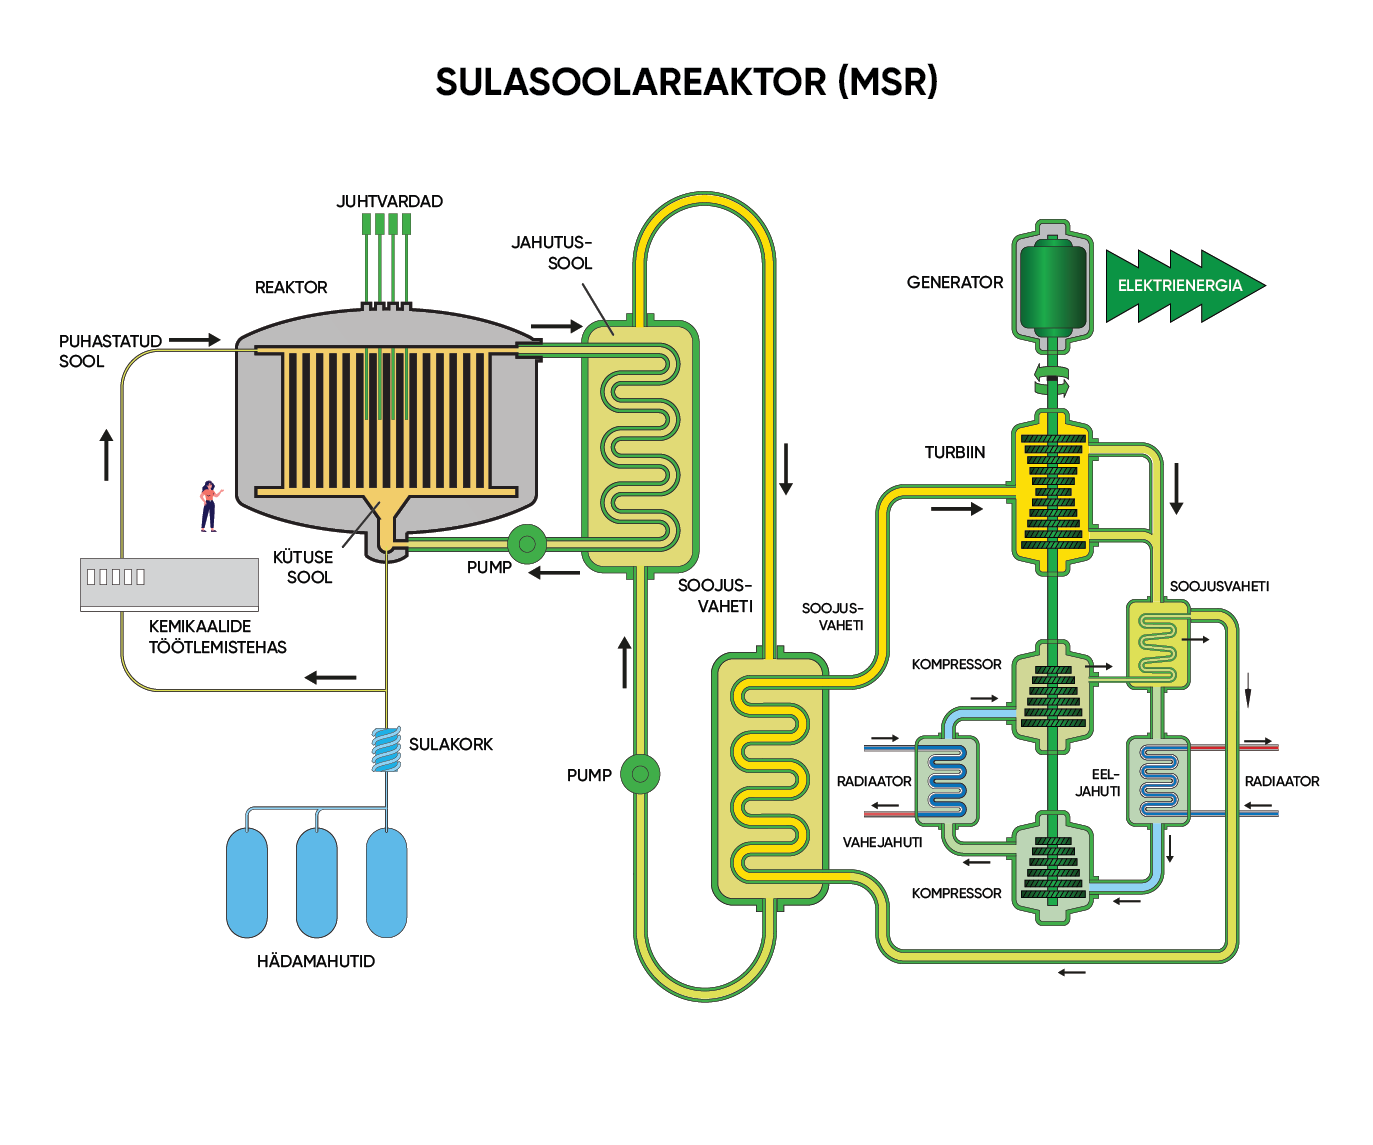 Sulasoolareaktor (MSR)